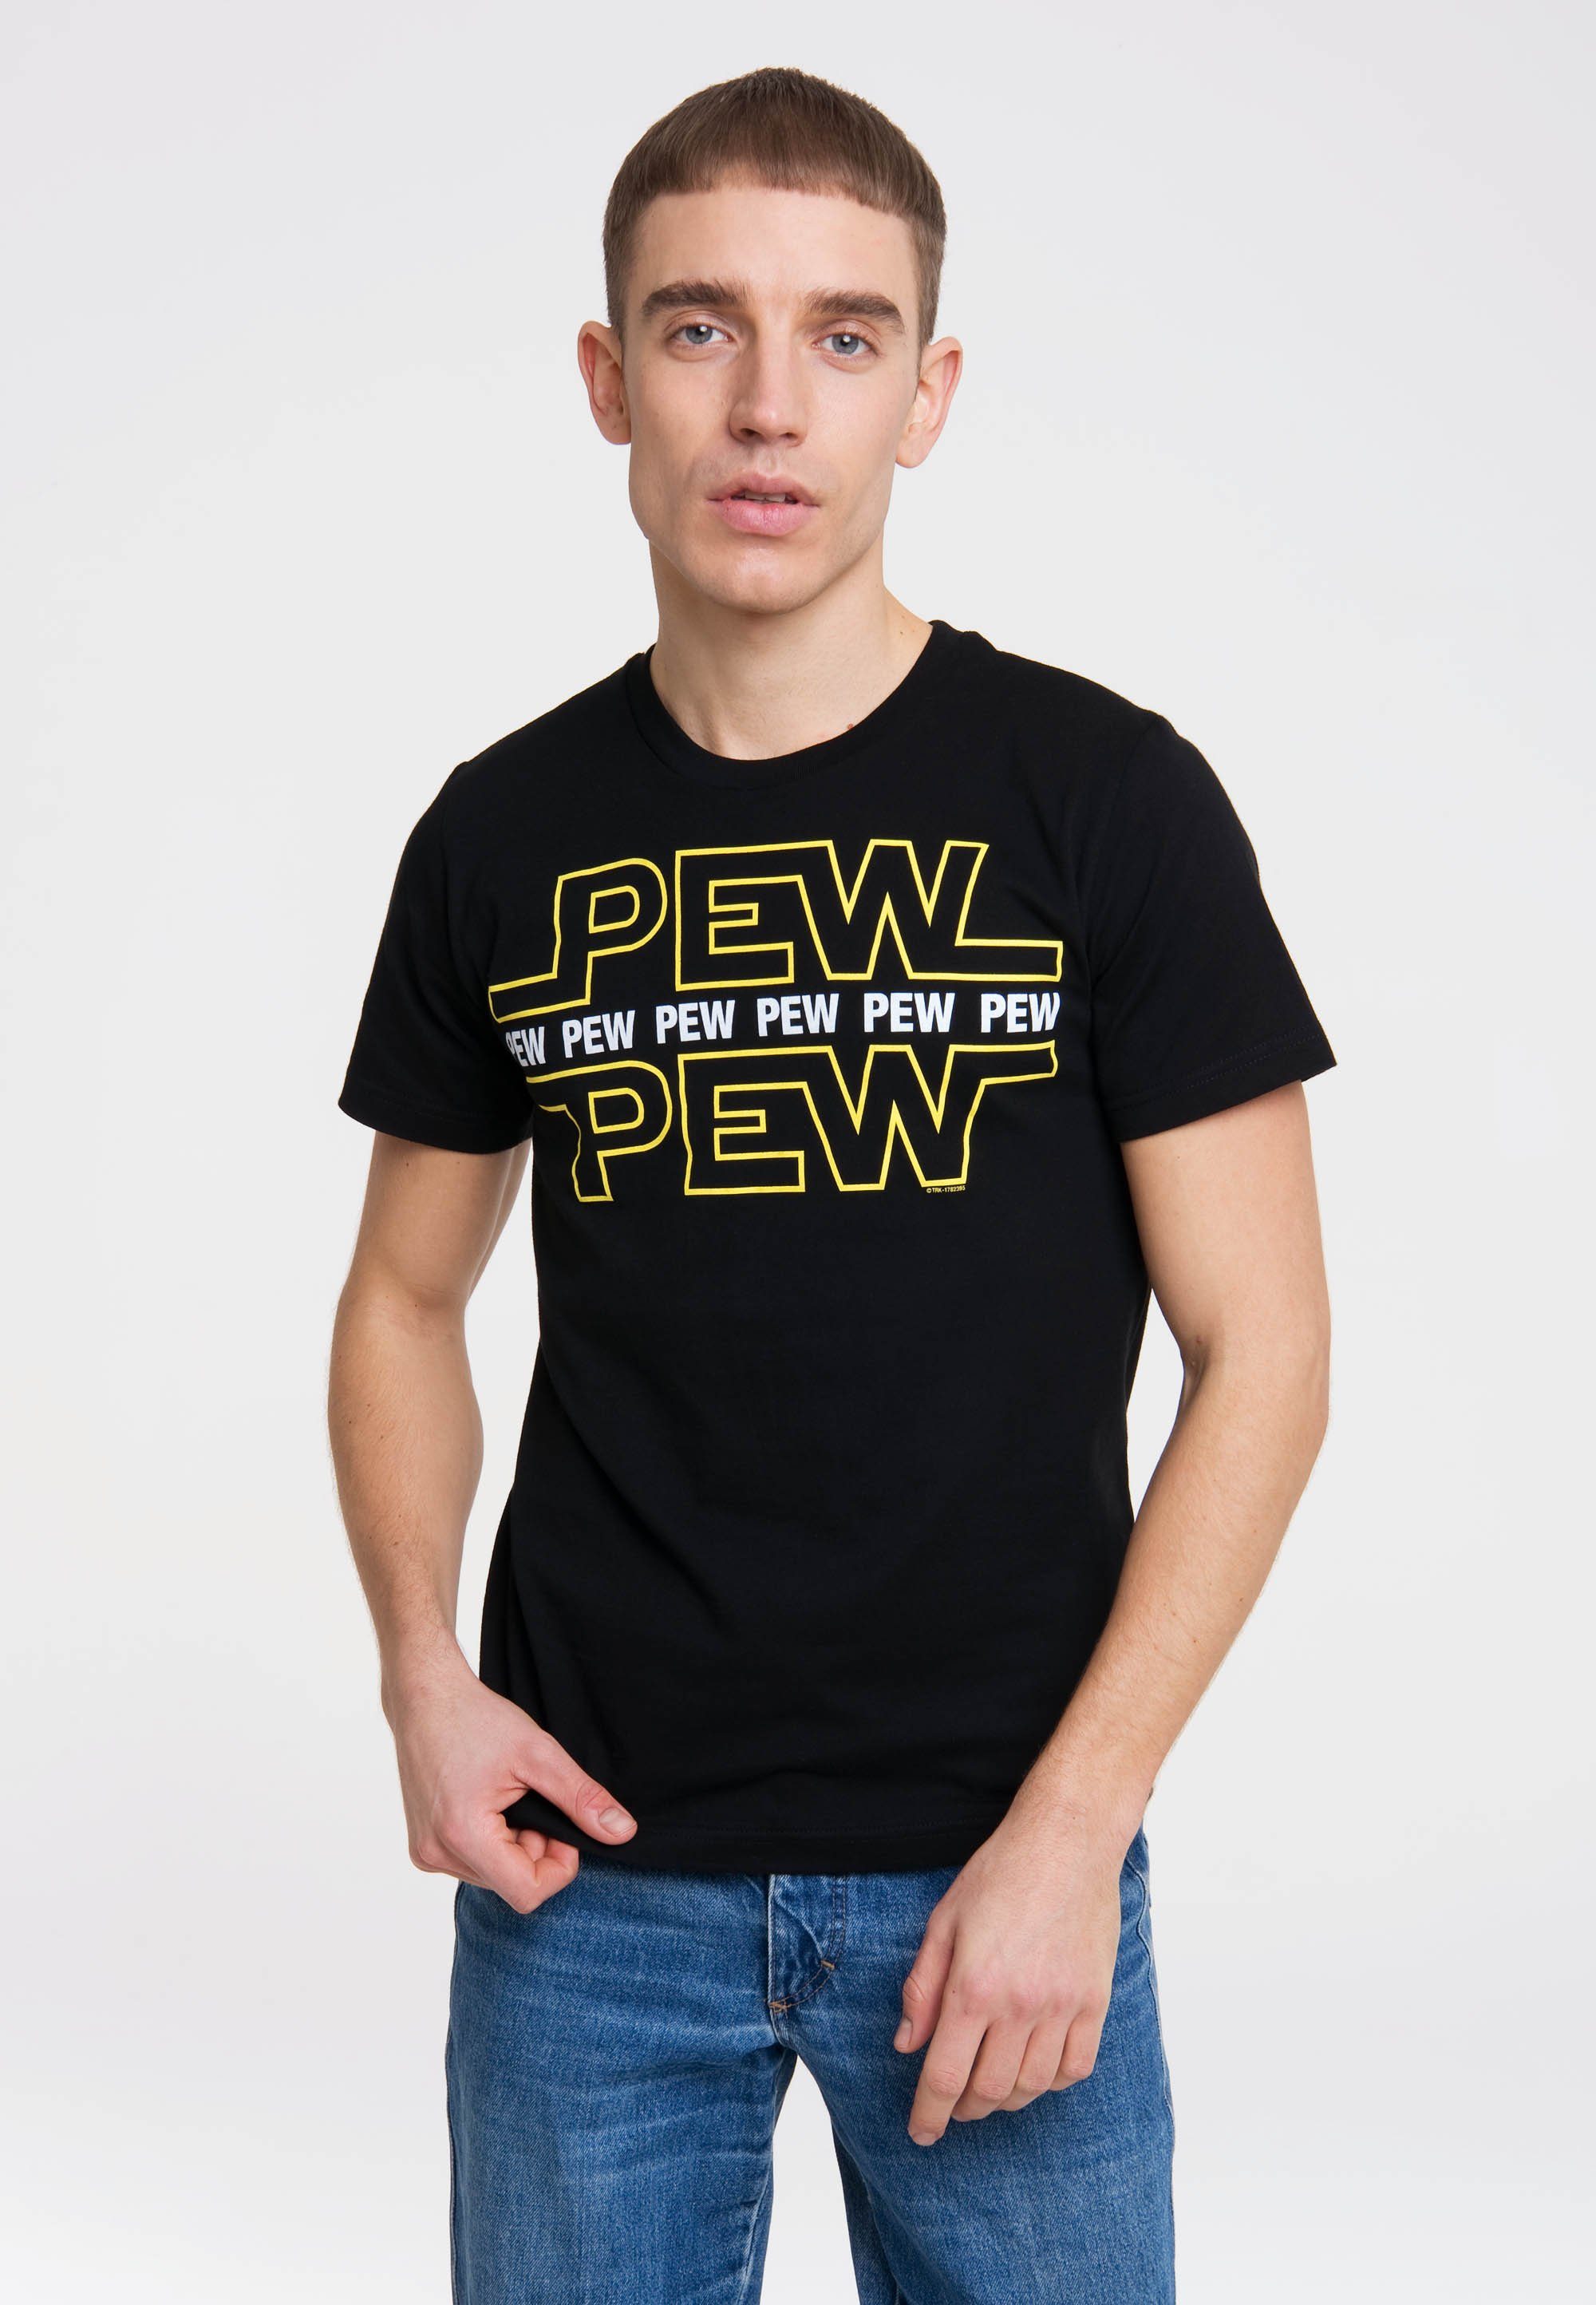 LOGOSHIRT T-Shirt mit Shirt Logoshirt Pew Cooles Pew Frontprintmotiv, Marke lustigem der